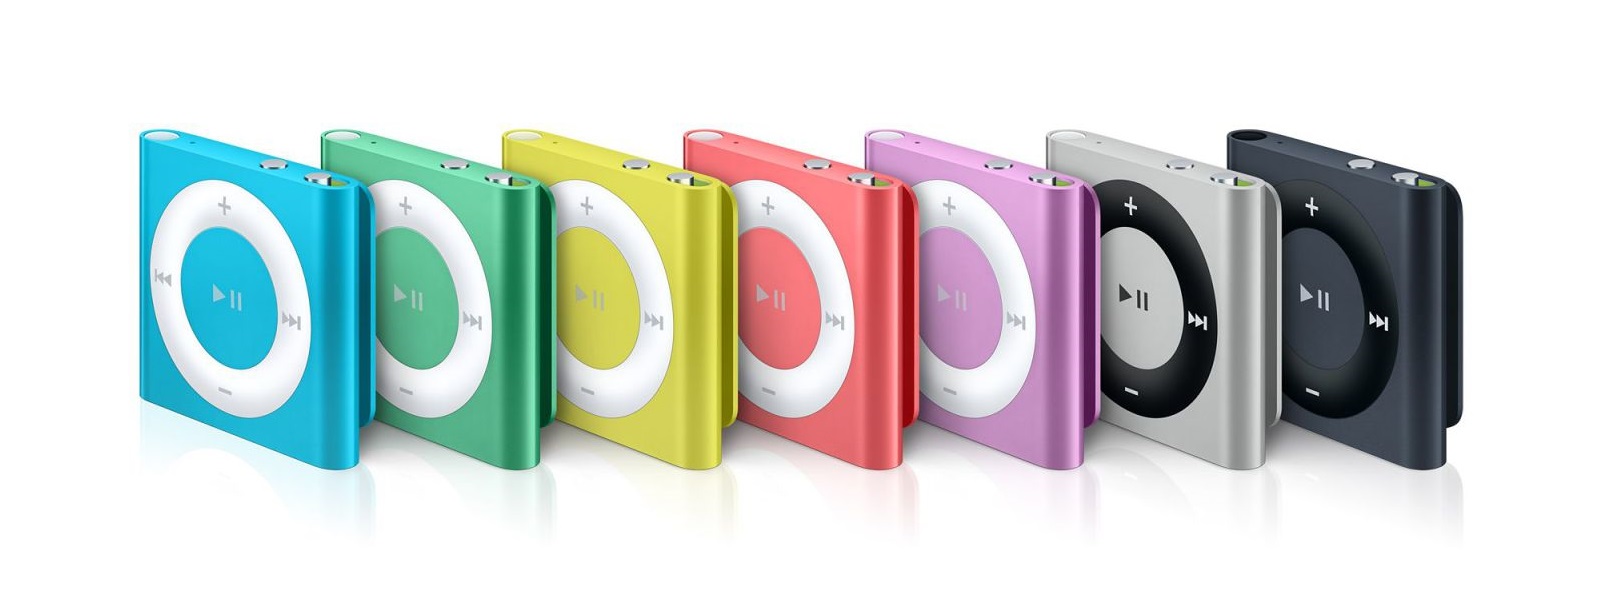 Apple iPod Shuffle 2GB Green